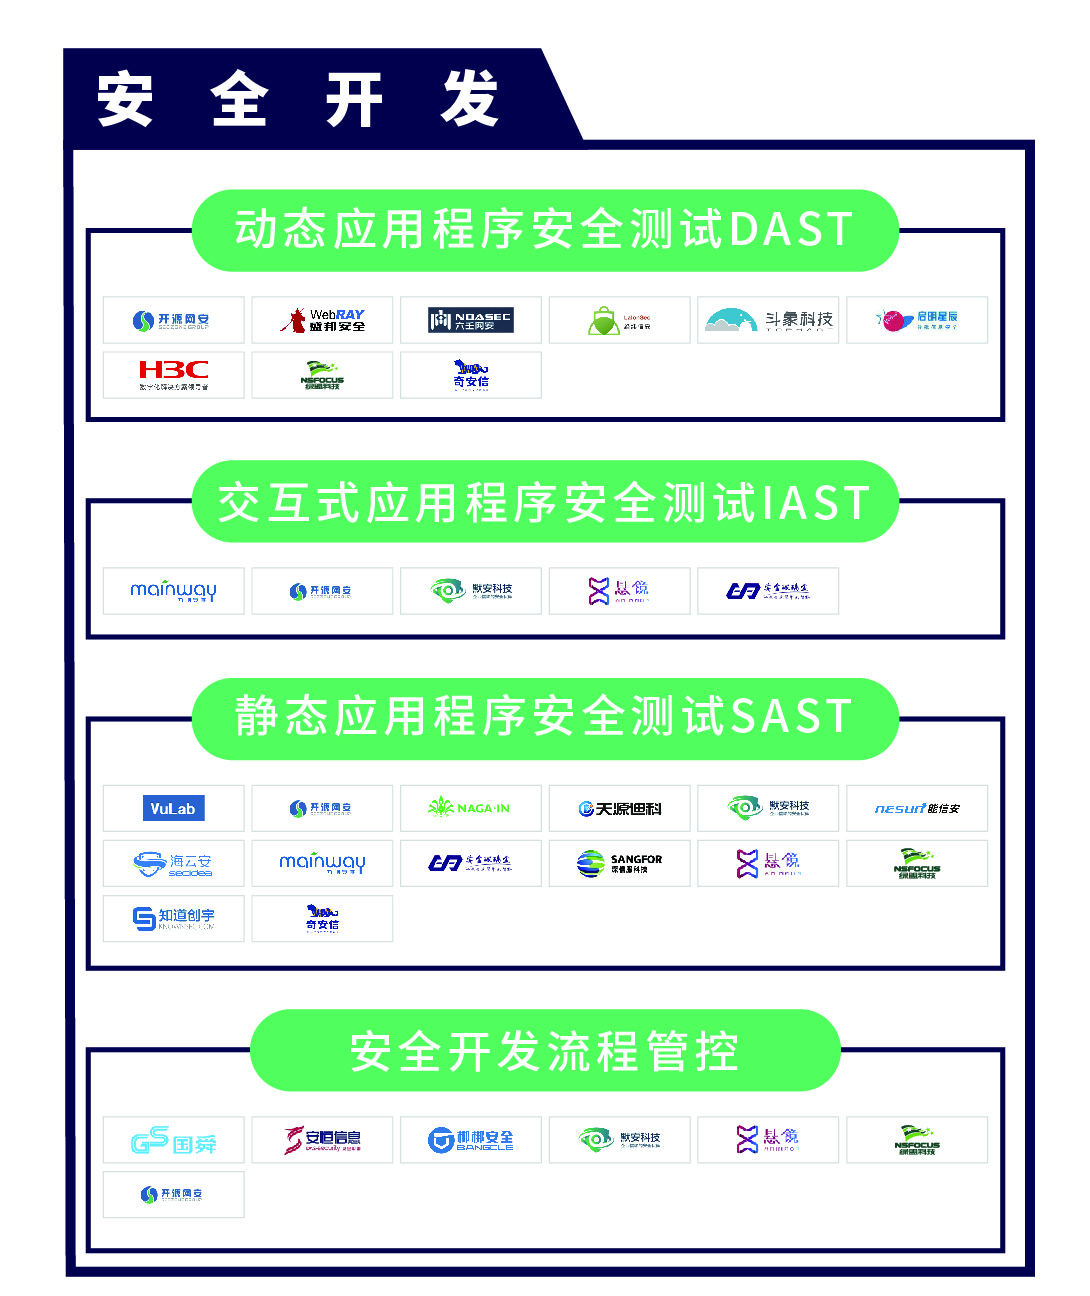 《CCSIP 2020中国网络安全产业全景图》正式发布 | FreeBuf咨询-第5张图片-网盾网络安全培训